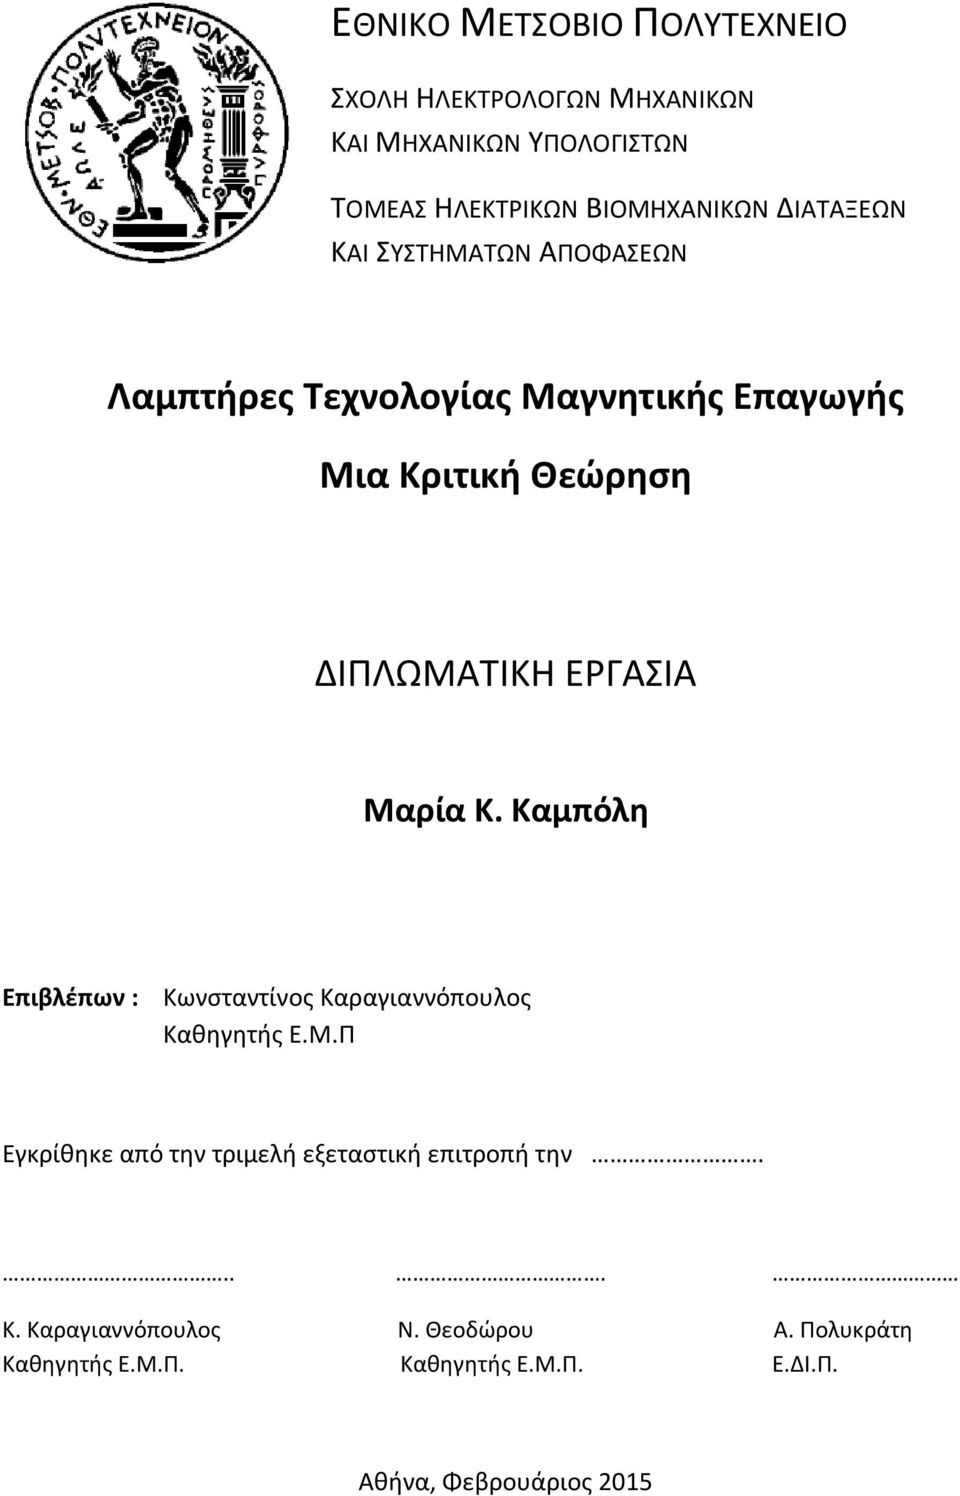 Μαρία Κ. Καμπόλη Επιβλέπων : Κωνσταντίνος Καραγιαννόπουλος Καθηγητής Ε.Μ.Π Εγκρίθηκε από την τριμελή εξεταστική επιτροπή την.